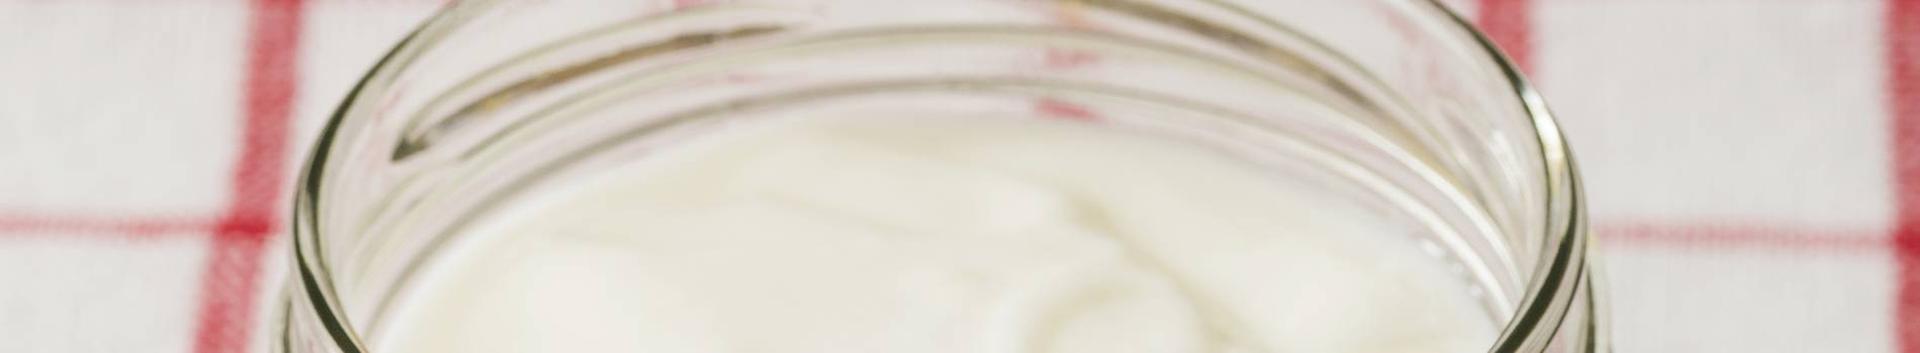 OÜ Geocheese Consult alustas oma tegevust 3.11.2016. ettevõtte peamiseks tegevusalaks on piima töötlemine, piimatoodete ja juustu valmistamine.